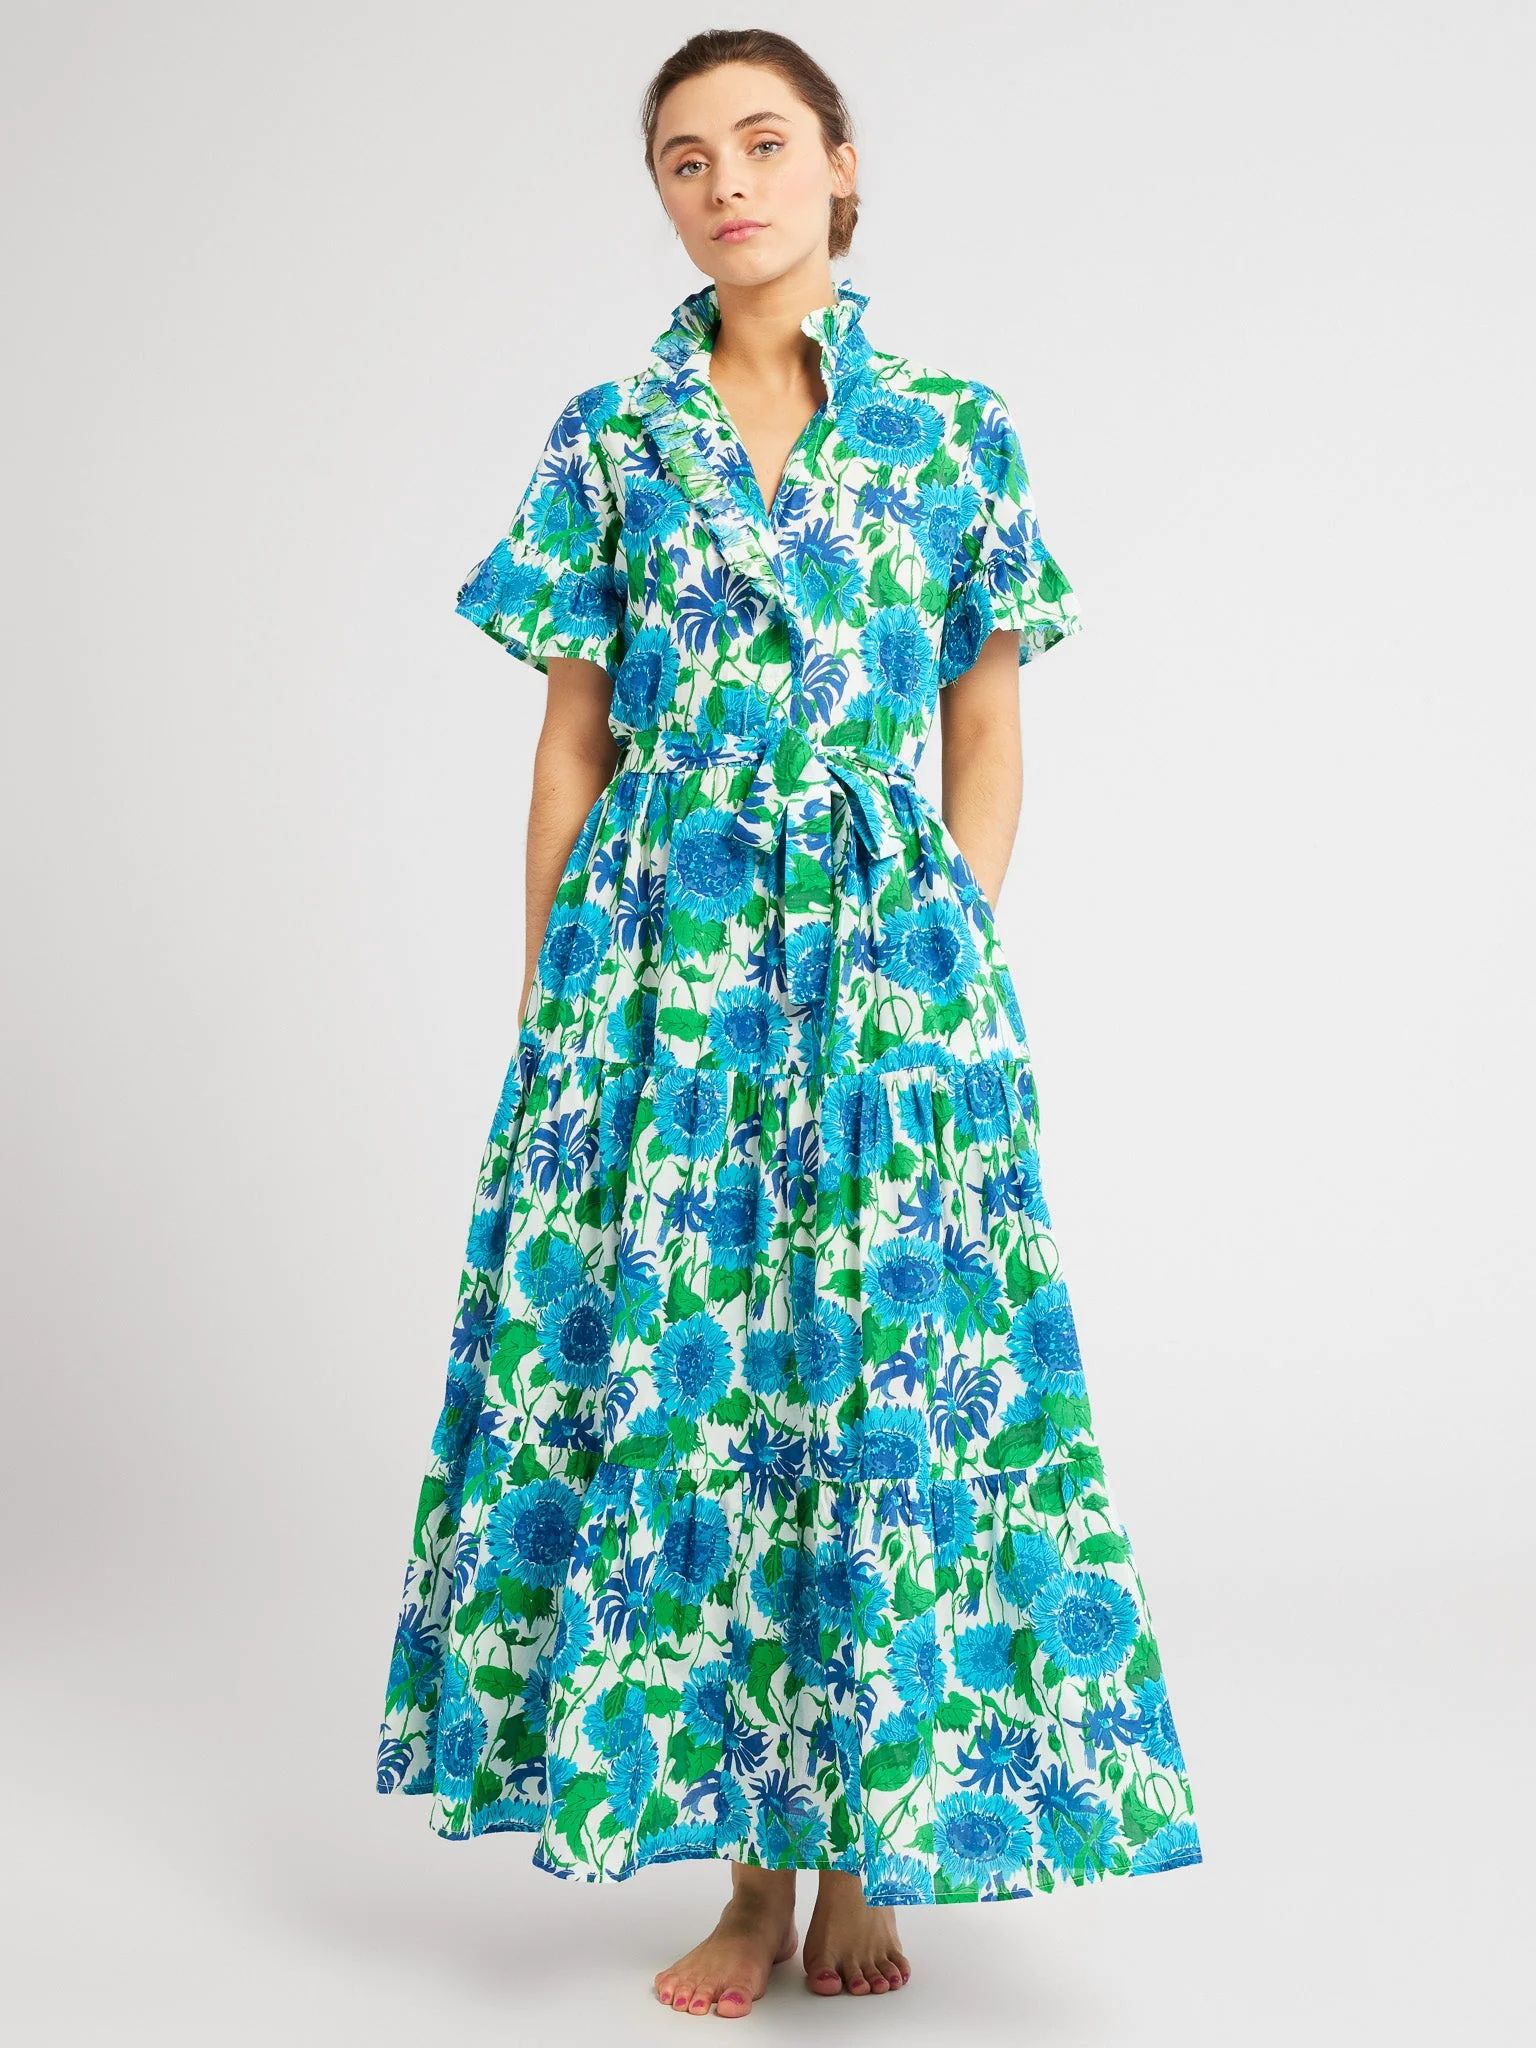 Shop Mille - Victoria Dress in Cornflower | Mille